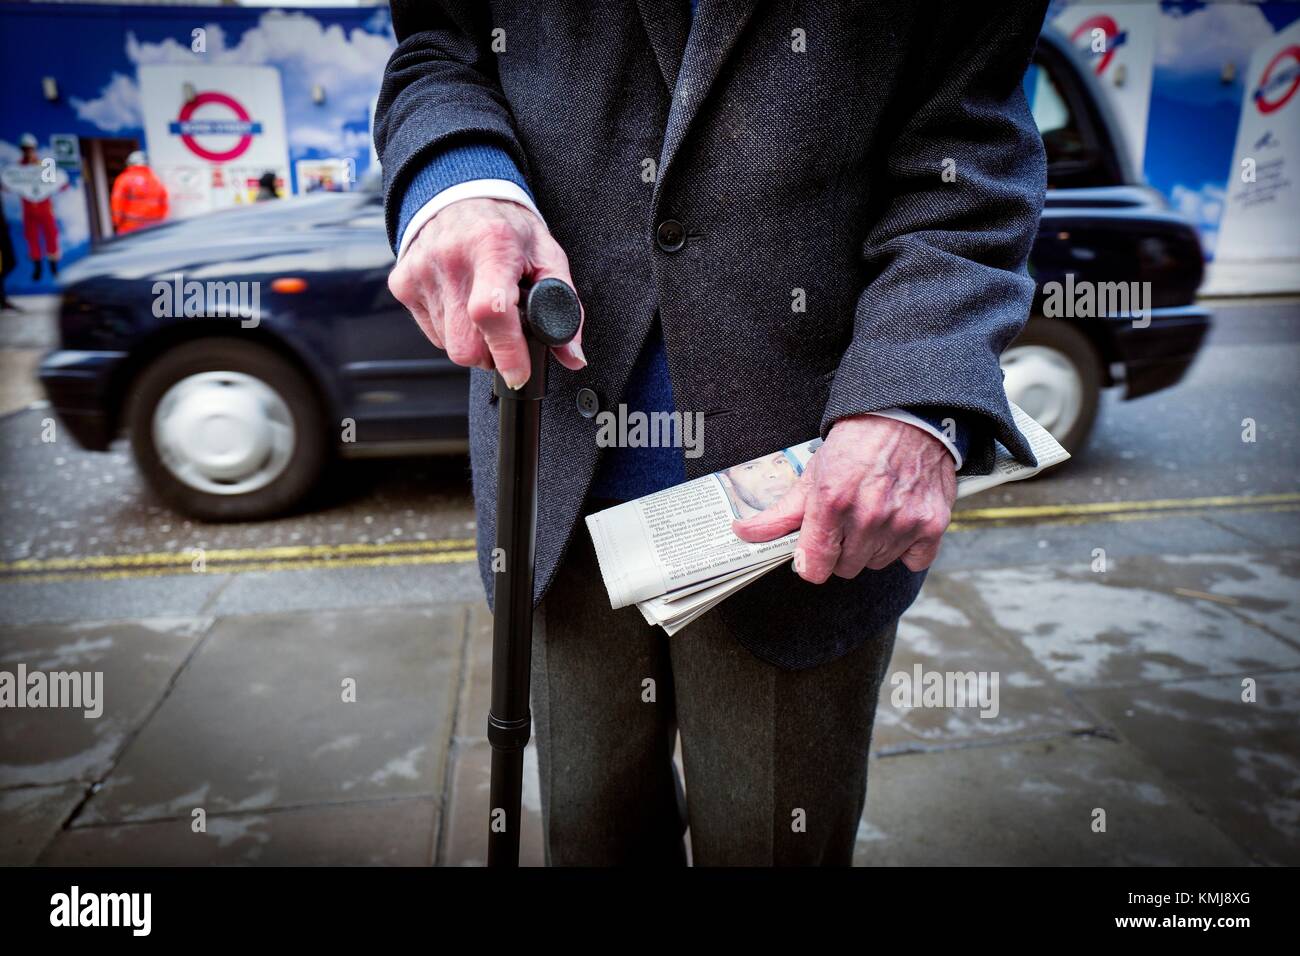 Primer plano de un hombre Bürgermeister irreconocible con un Baston de una mano y un Periodico en La otra, al Fondo un Taxi. Oxford Street, London, UK, Europa. Stockfoto